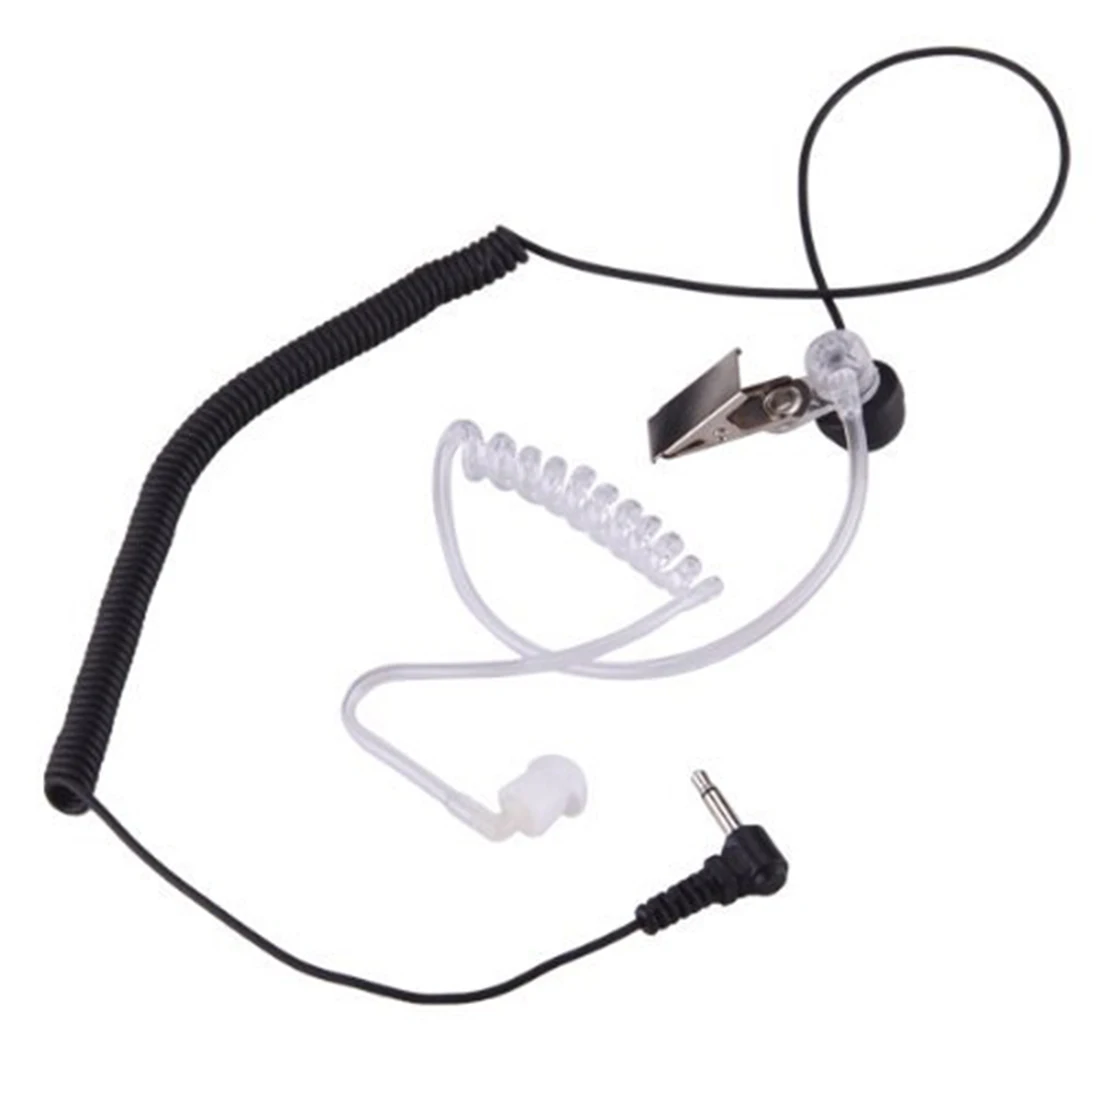 Etmakit новая мода 3,5 мм скрытый микрофон Акустическая трубка наушник гарнитура 1 PIN для Motorola ICOM радио